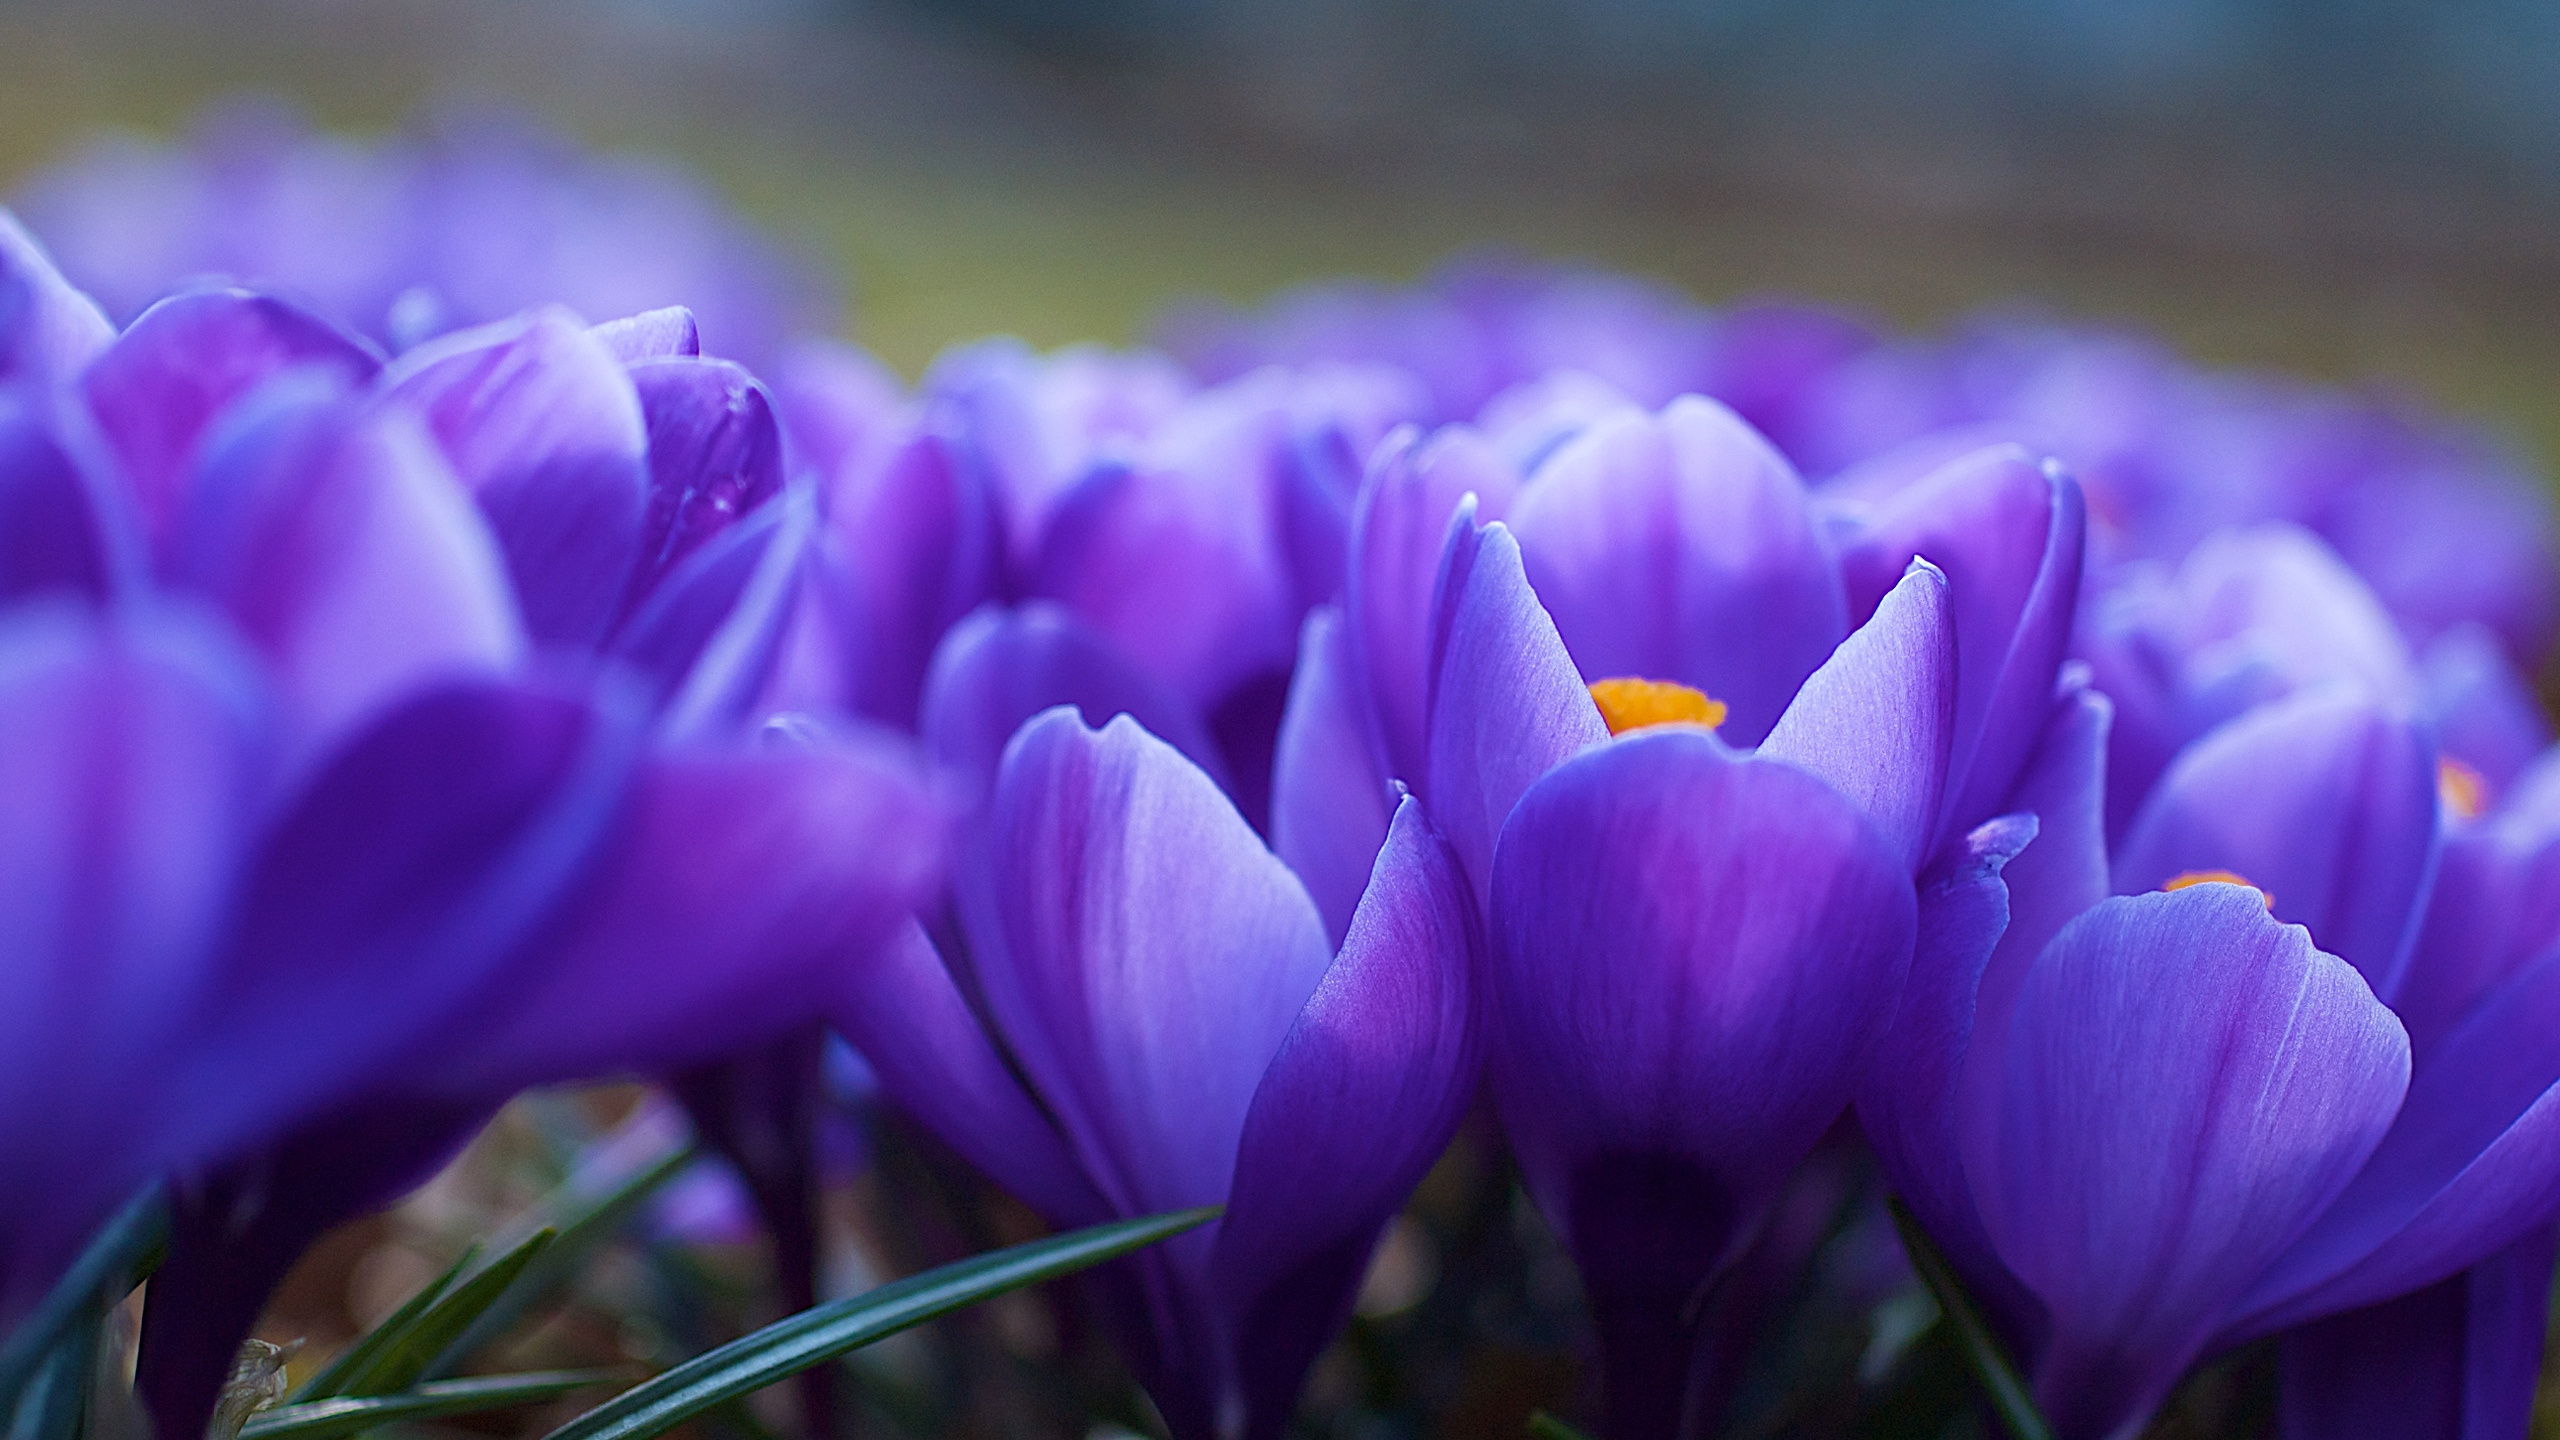 显花植物, 紫色的, 藏红花, 弹簧, 野花 壁纸 2560x1440 允许